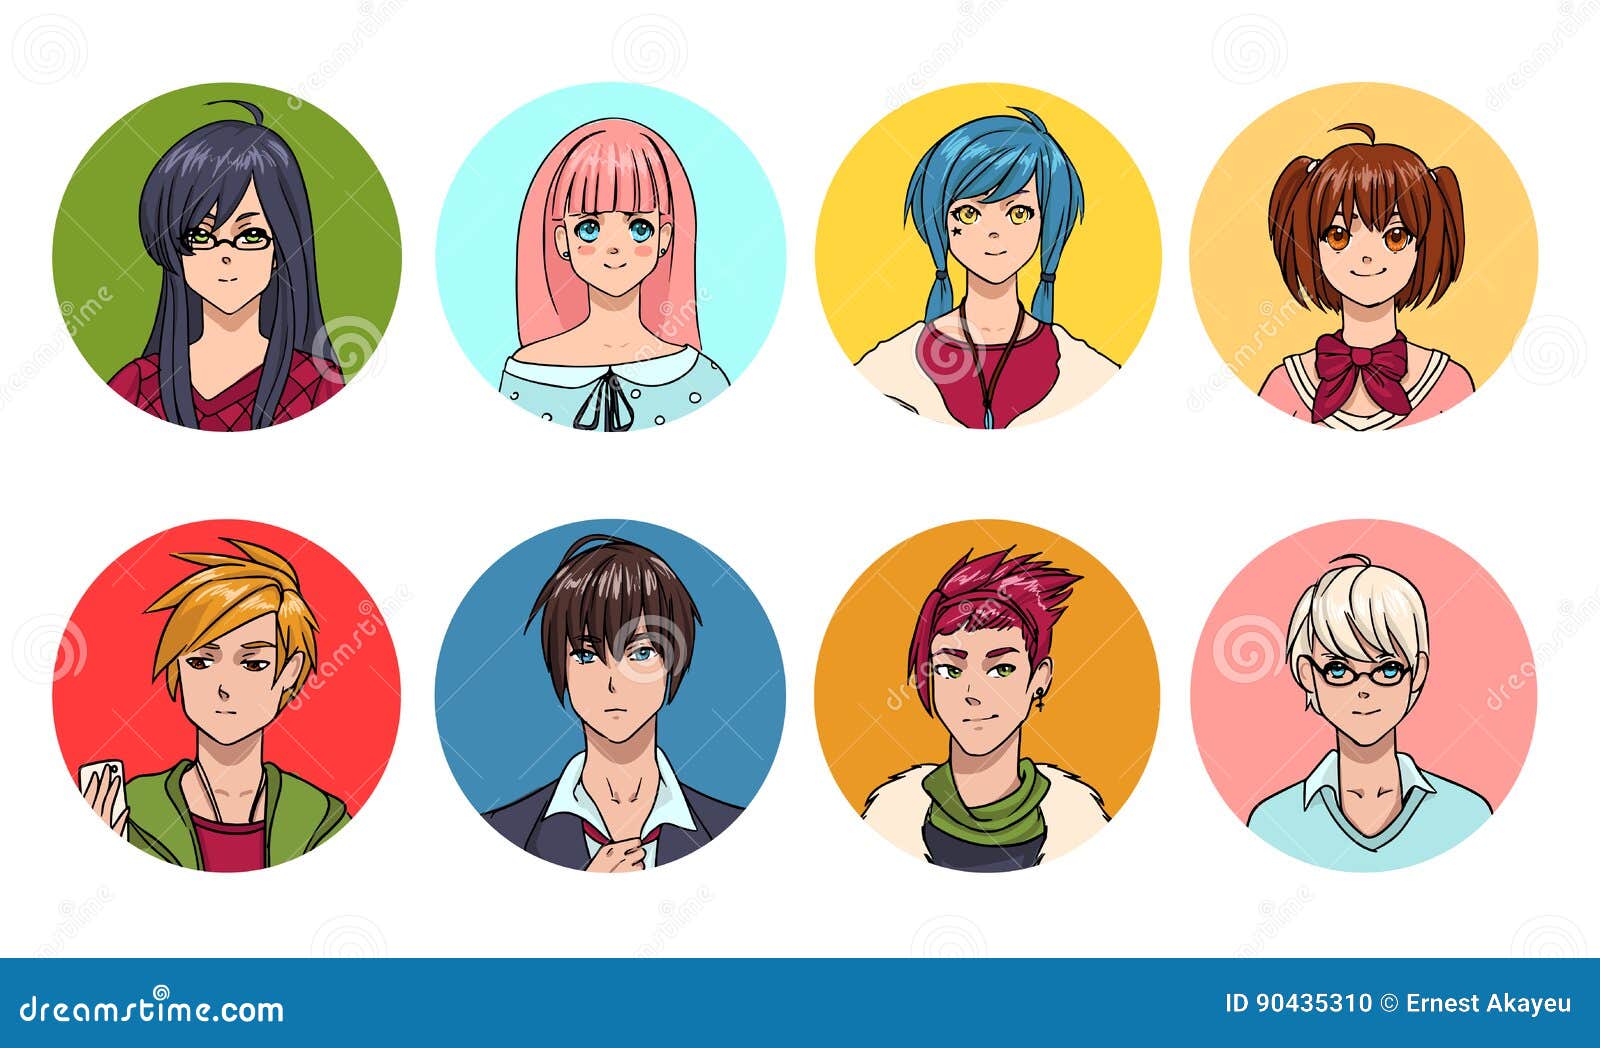 Hình đại diện anime con trai và con gái mới sẽ làm say đắm trái tim người xem. Những nhân vật anime mới được thiết kế với phong cách độc đáo, năng động và tinh tế. Sự kết hợp giữa kiểu tóc, trang phục và phong cách trang điểm sẽ mang đến một vẻ ngoài mới mẻ và bắt mắt.